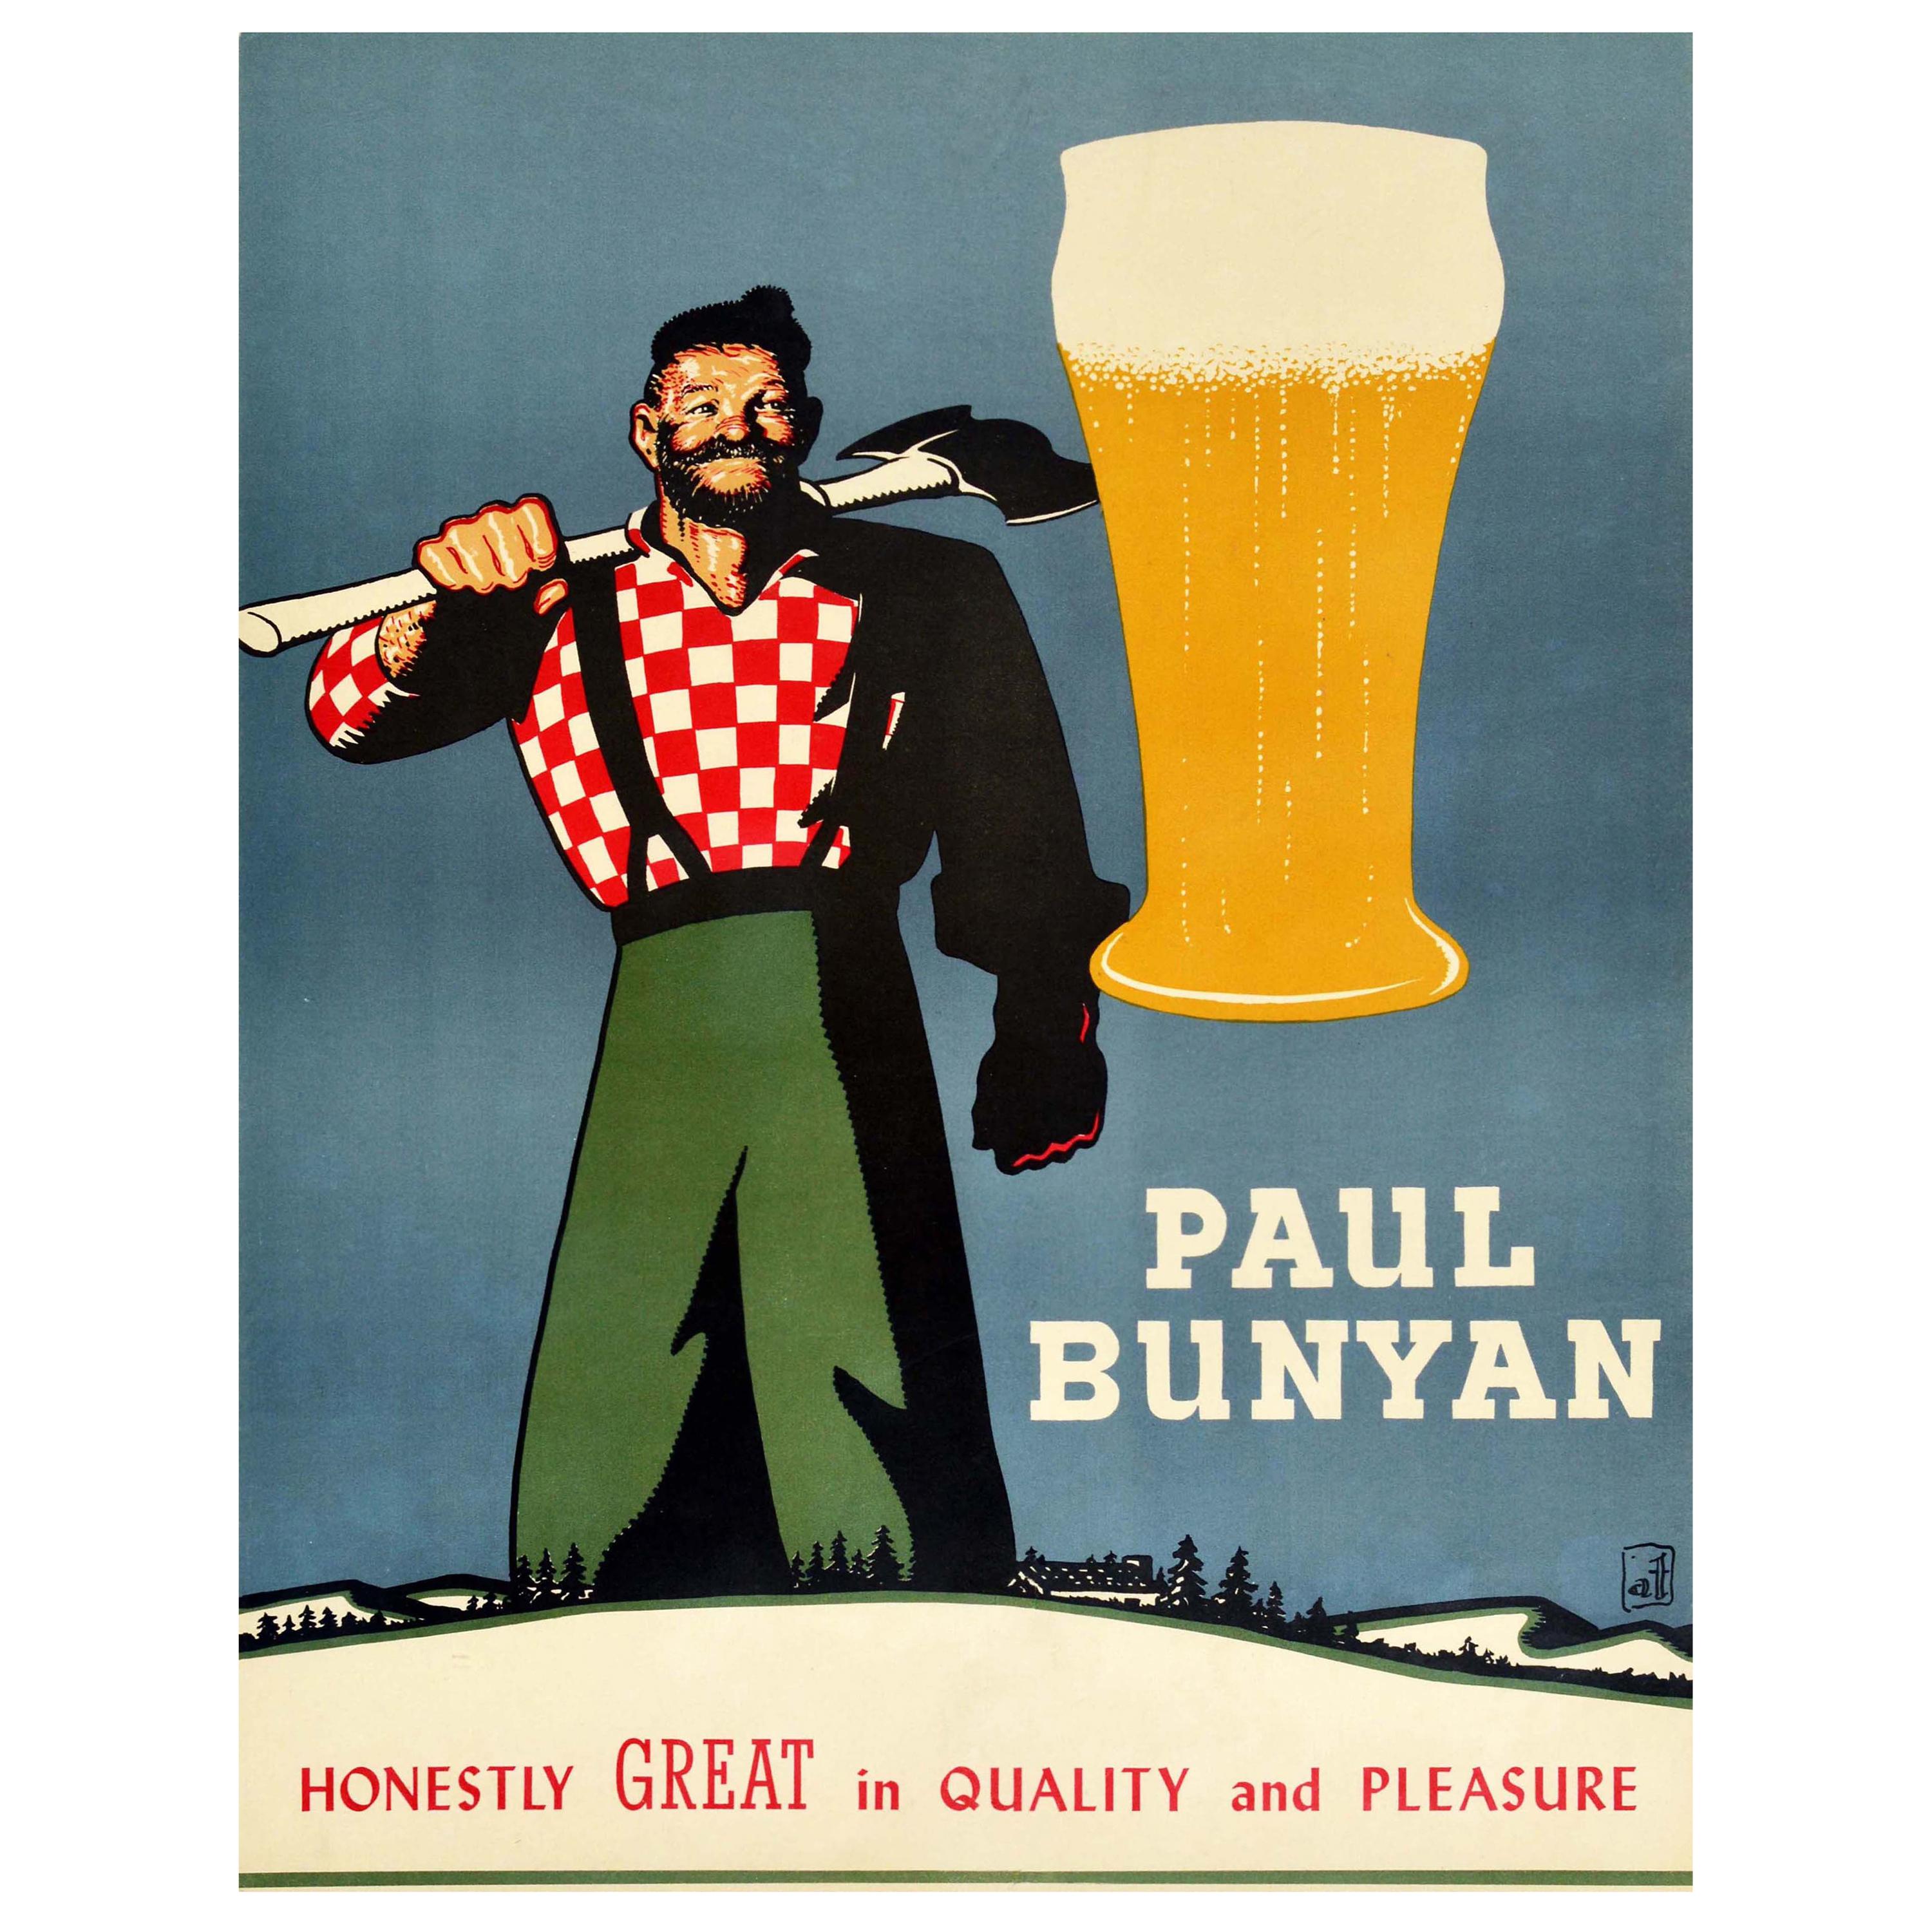 Original Vintage Poster Paul Bunyan Honestly Great Quality & Pleasure Beer Drink